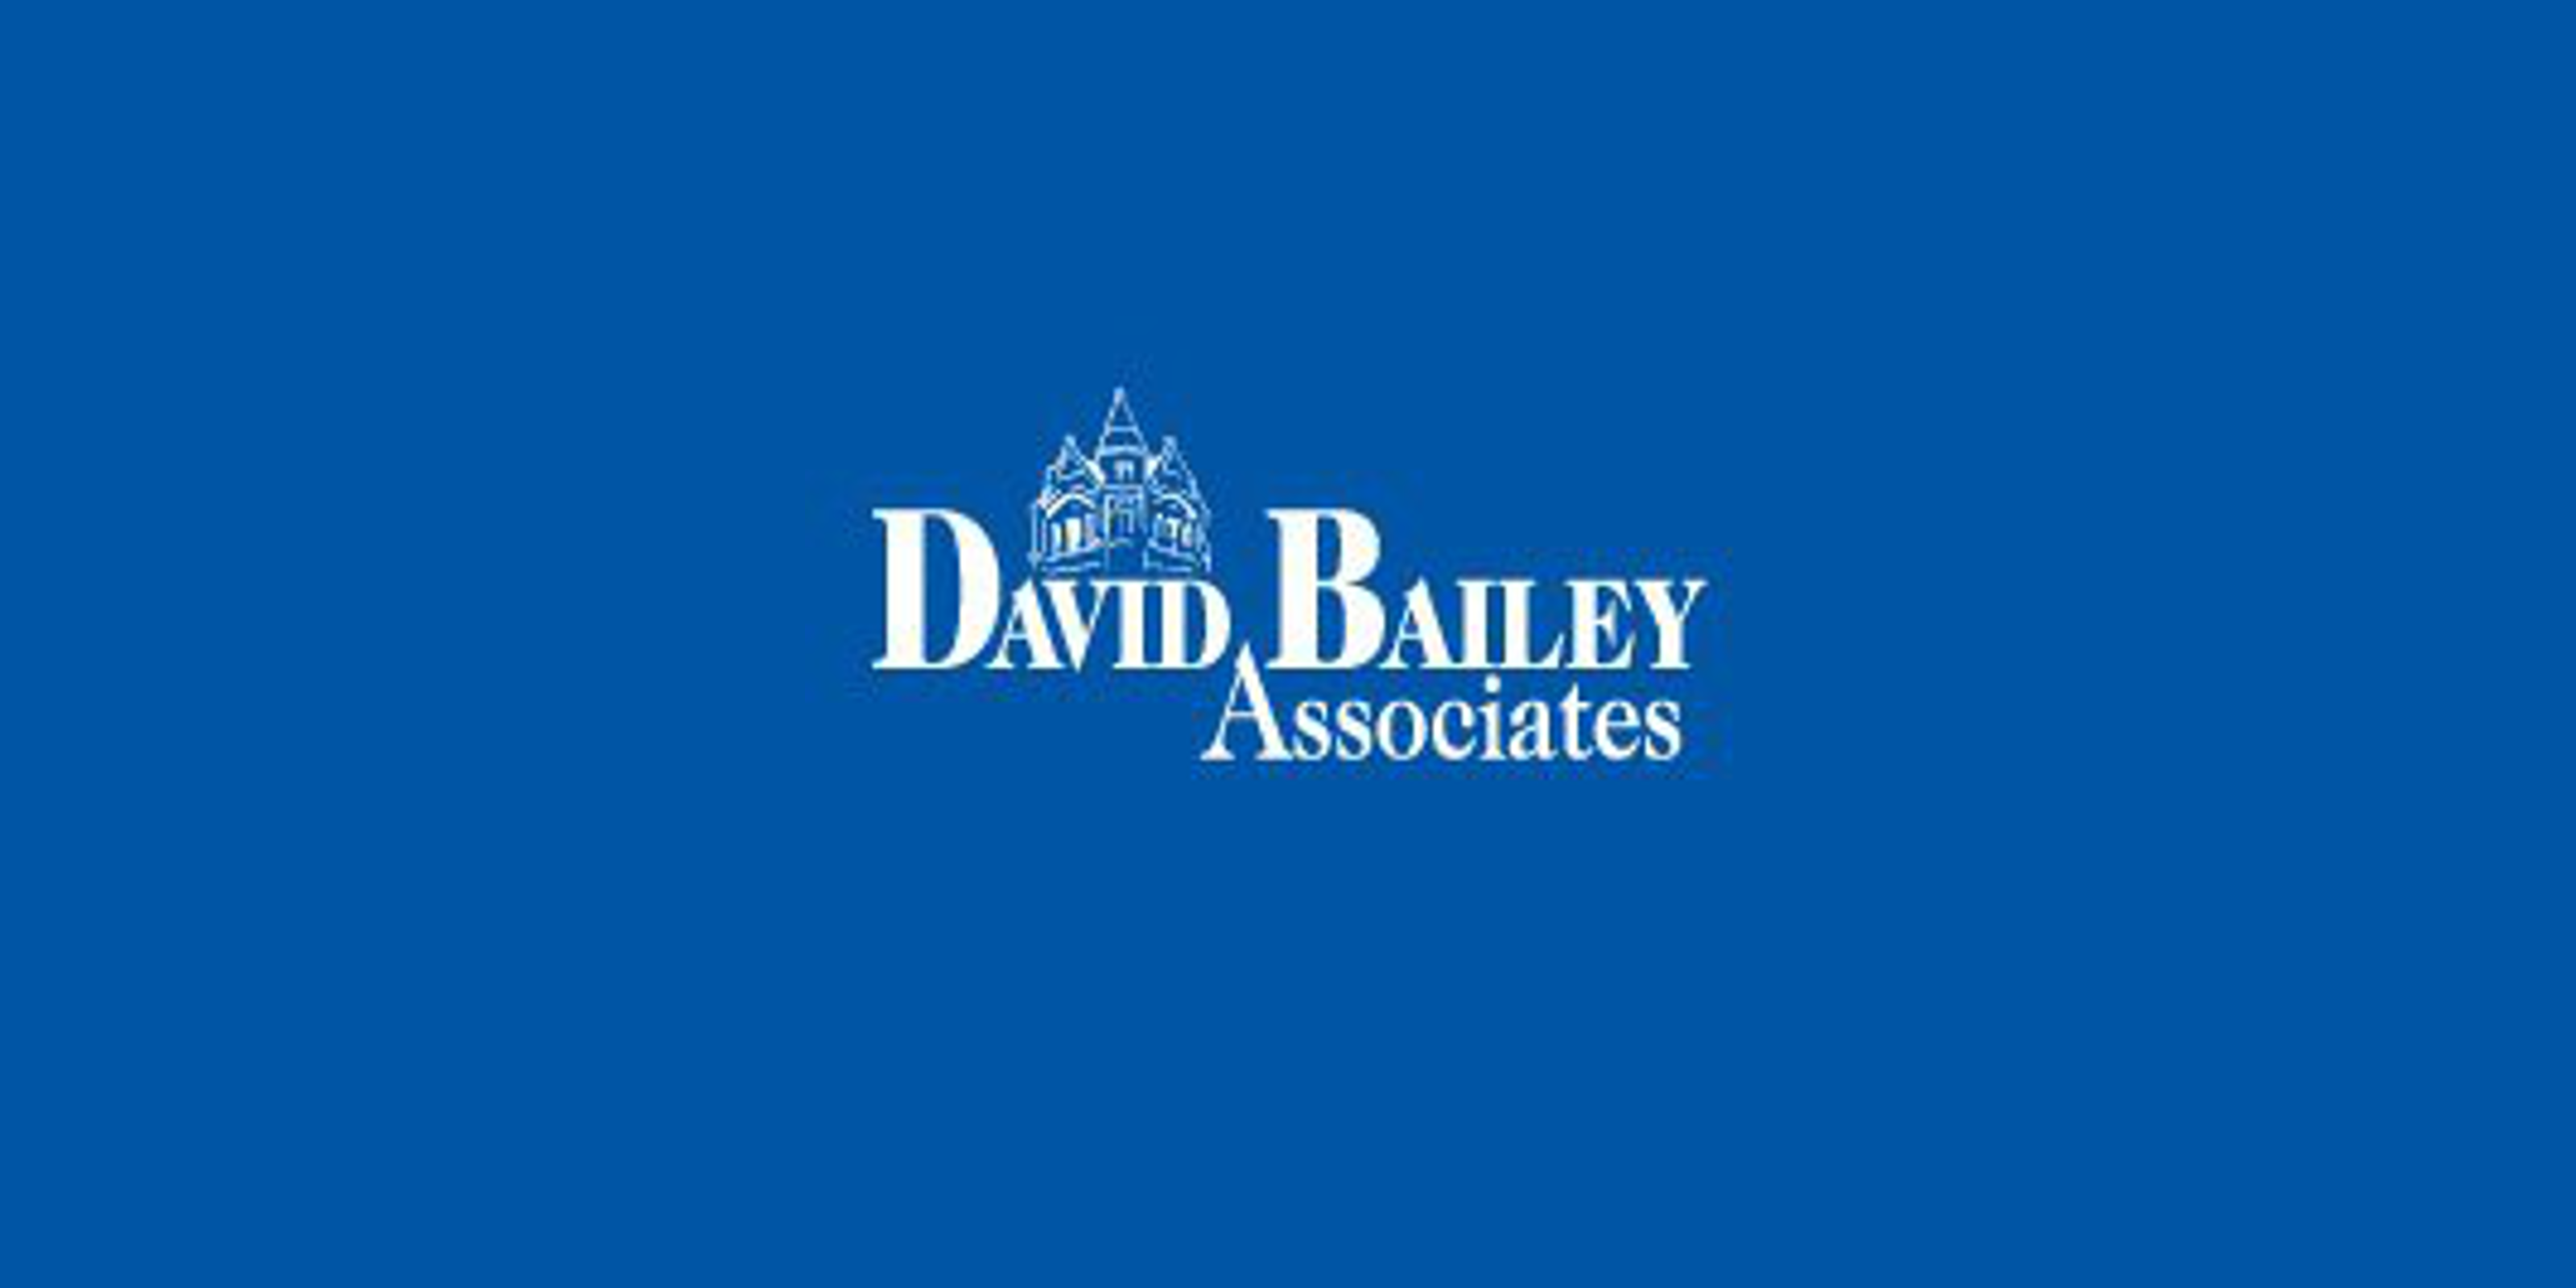 David Bailey Associates